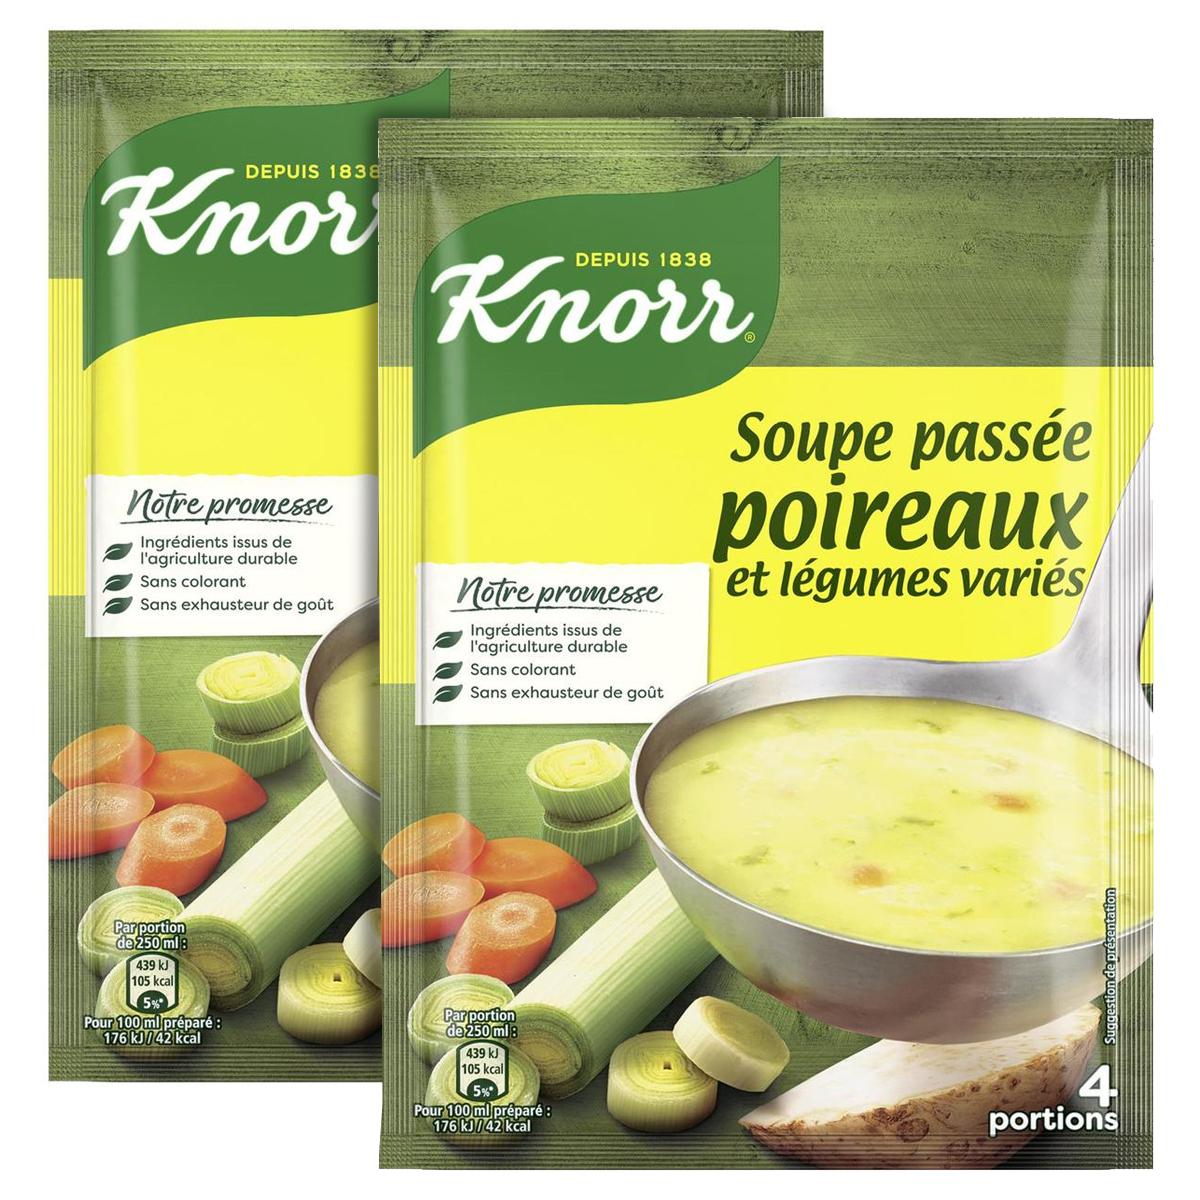 Knorr Soupe déshydratée douceur de 9 légumes 